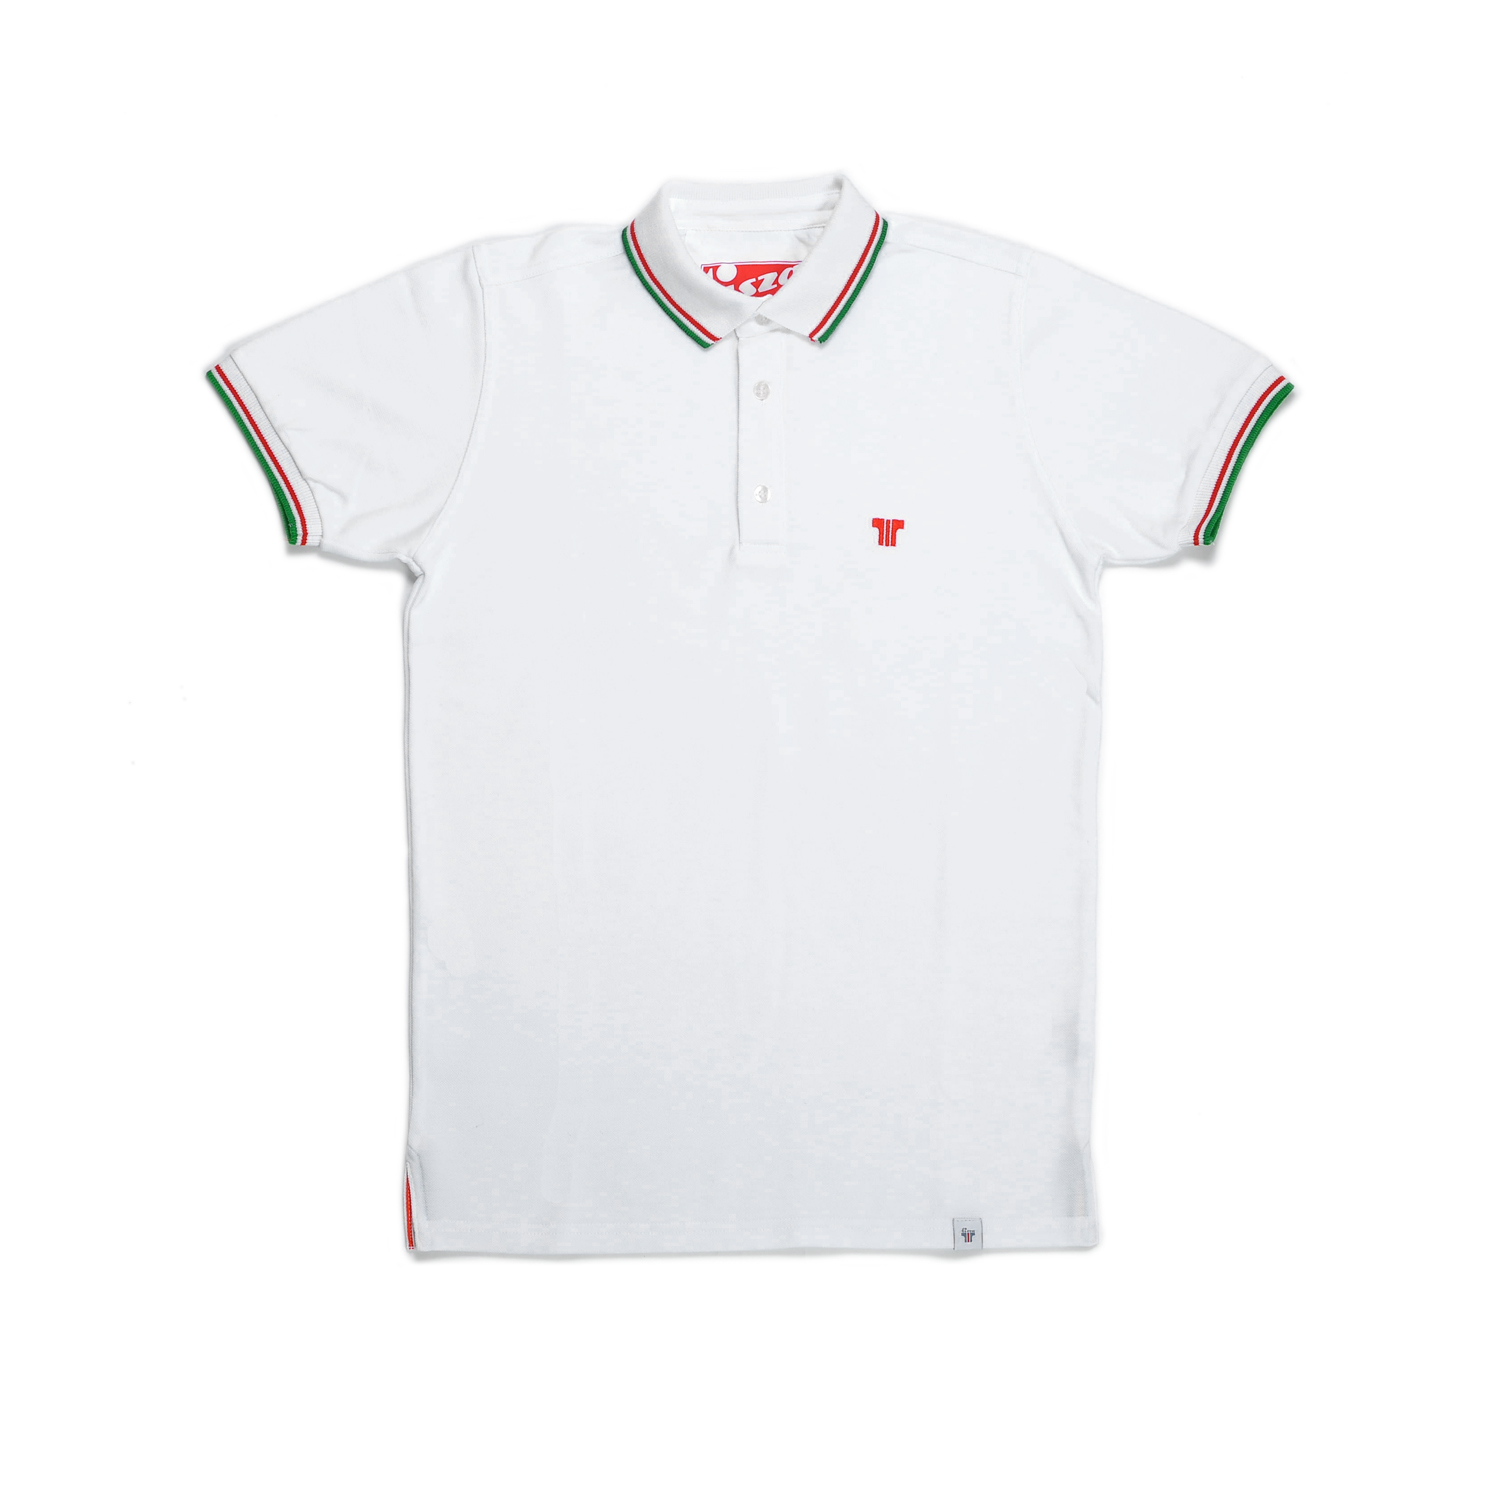 Tisza shoes - Tennis Shirt - White olympiad